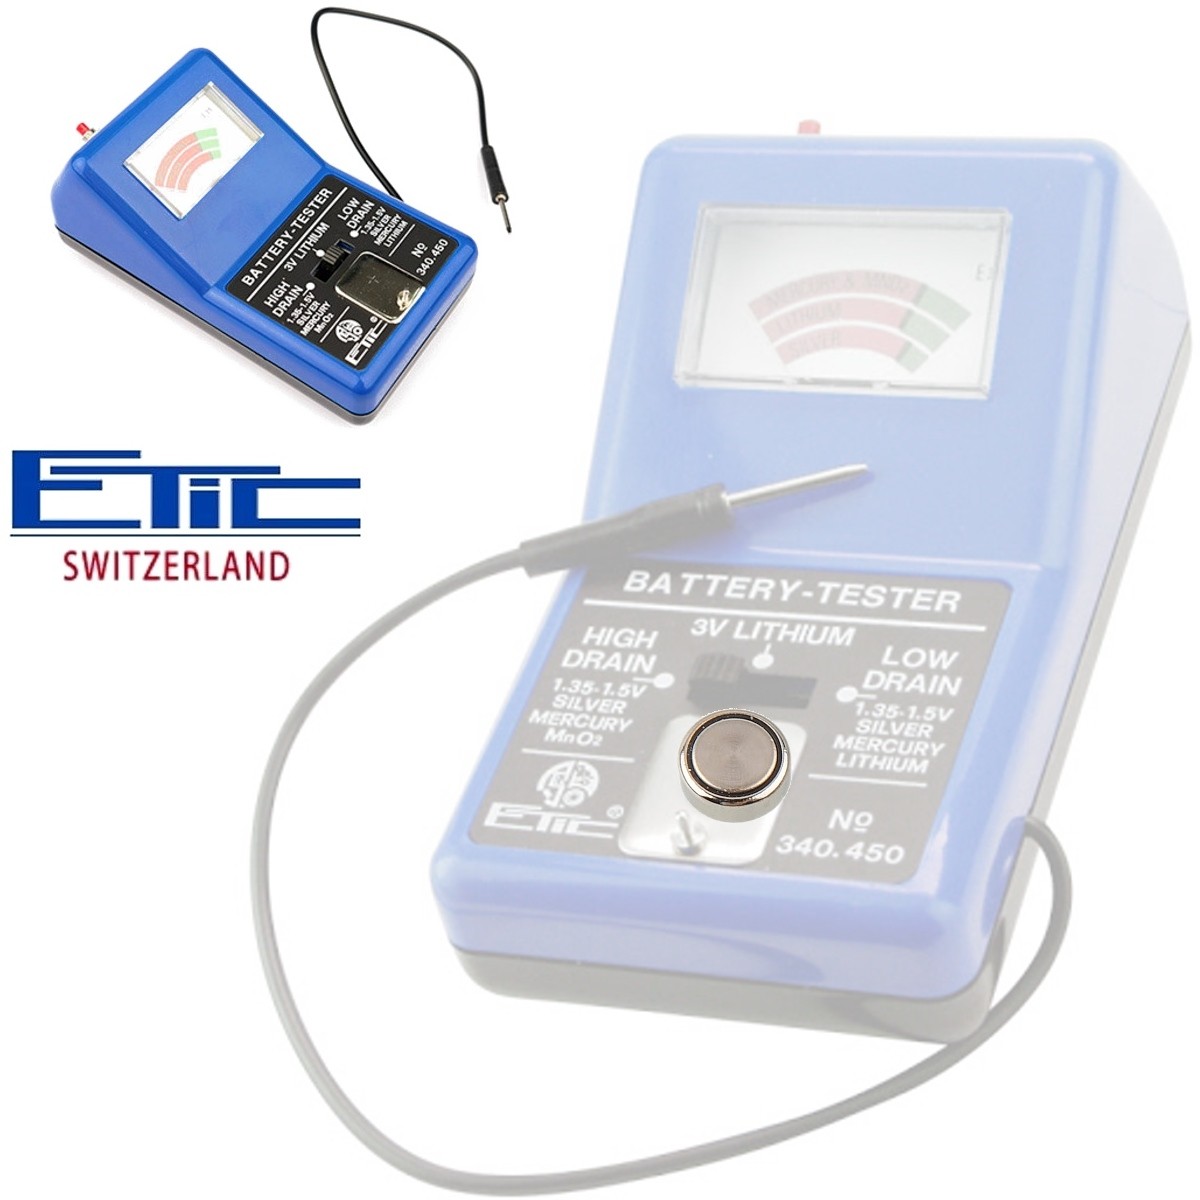 Comprobador de batería de pila de botón, comprobador de voltios,  verificador de batería doméstico, herramientas de reparación de relojes,  ideal para